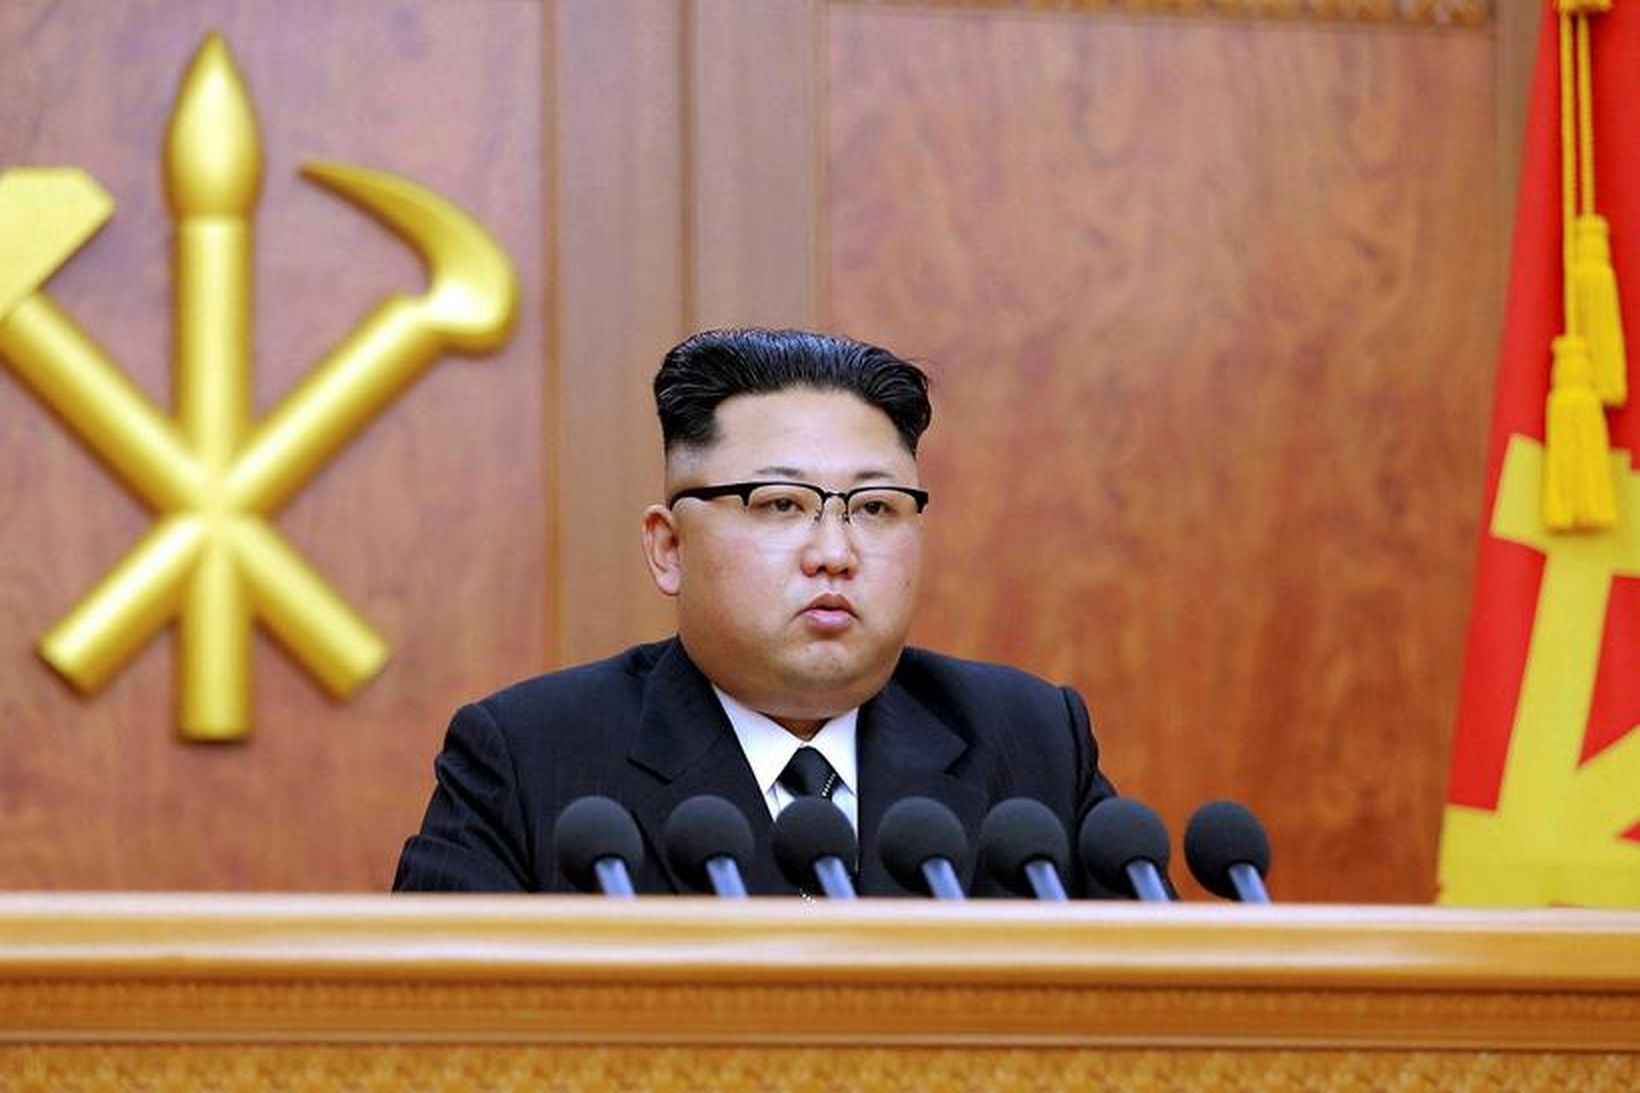 Kims Jong-un, leiðtogi Norður-Kóreu. Sergei Lavrov, utanríkisráðherra Rússlands, segir bandarísk …